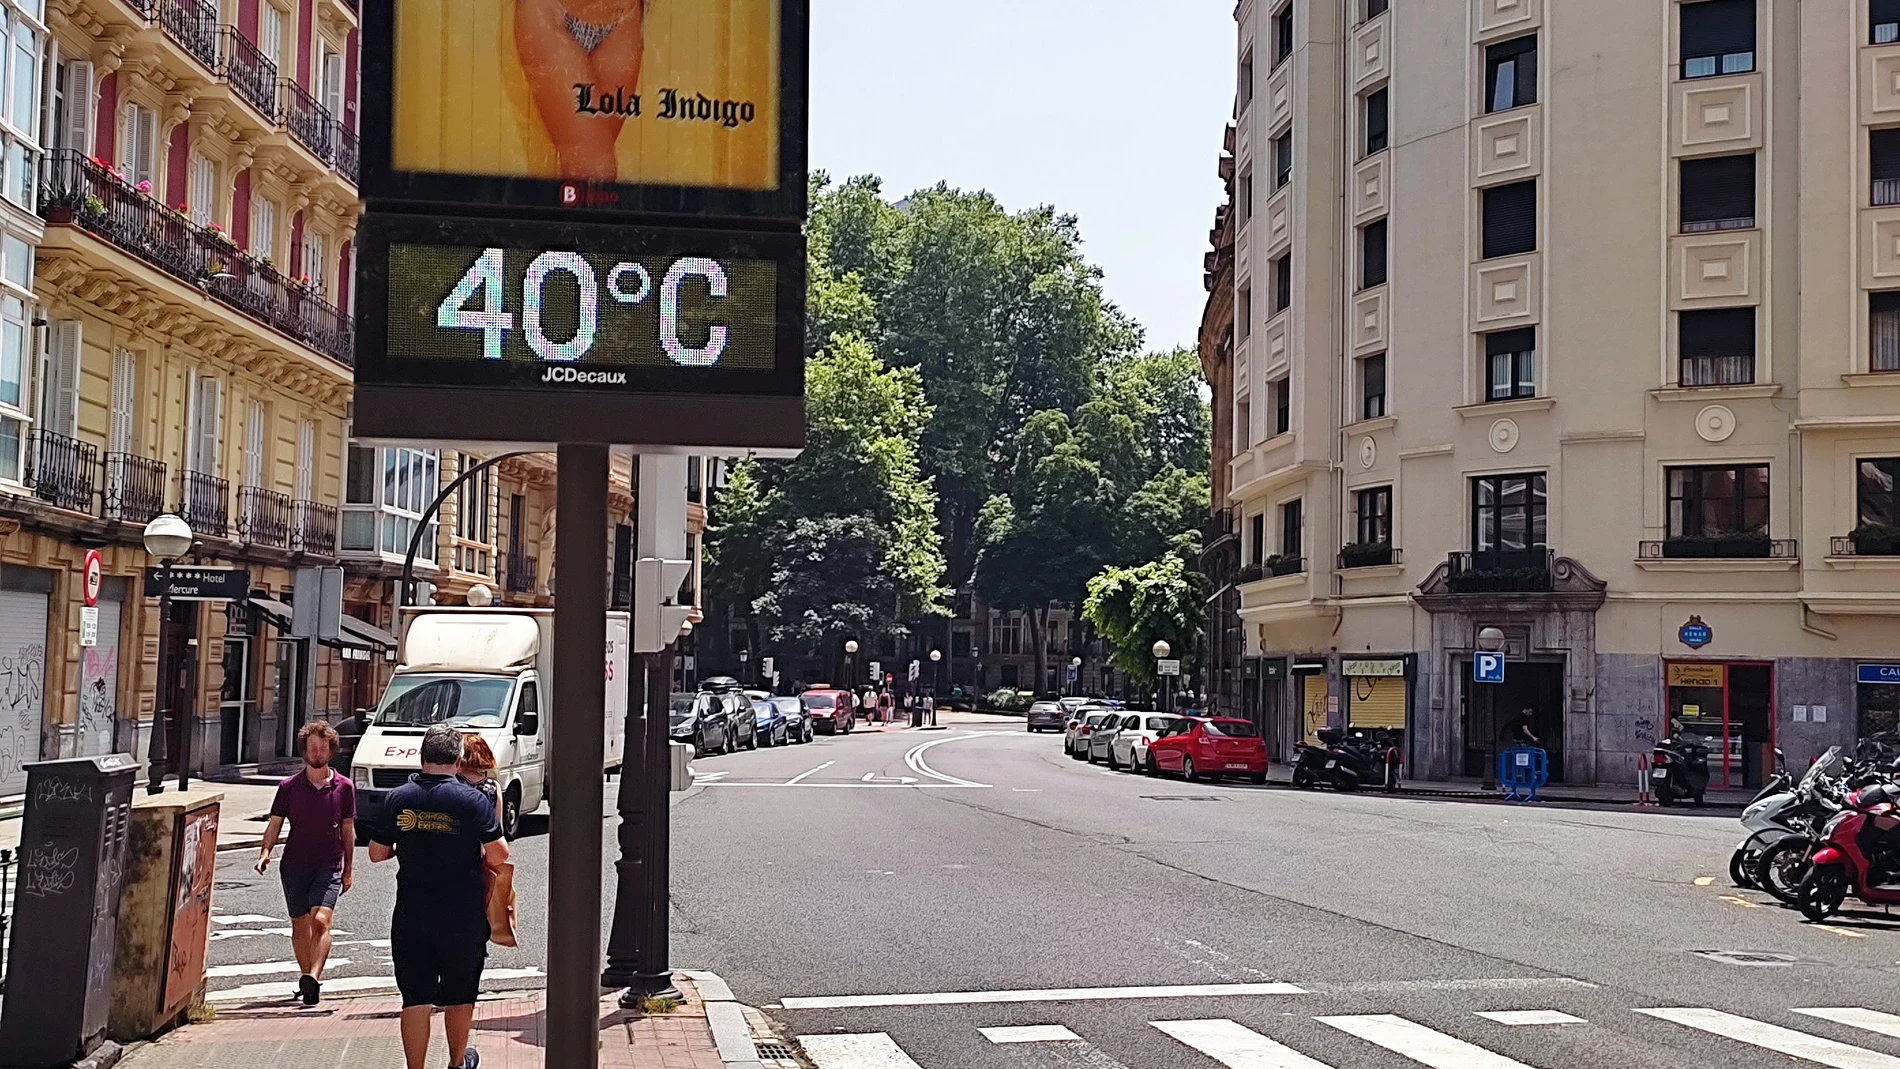 Un termómetro marca 40 ºC en un céntrica calle de Bilbao